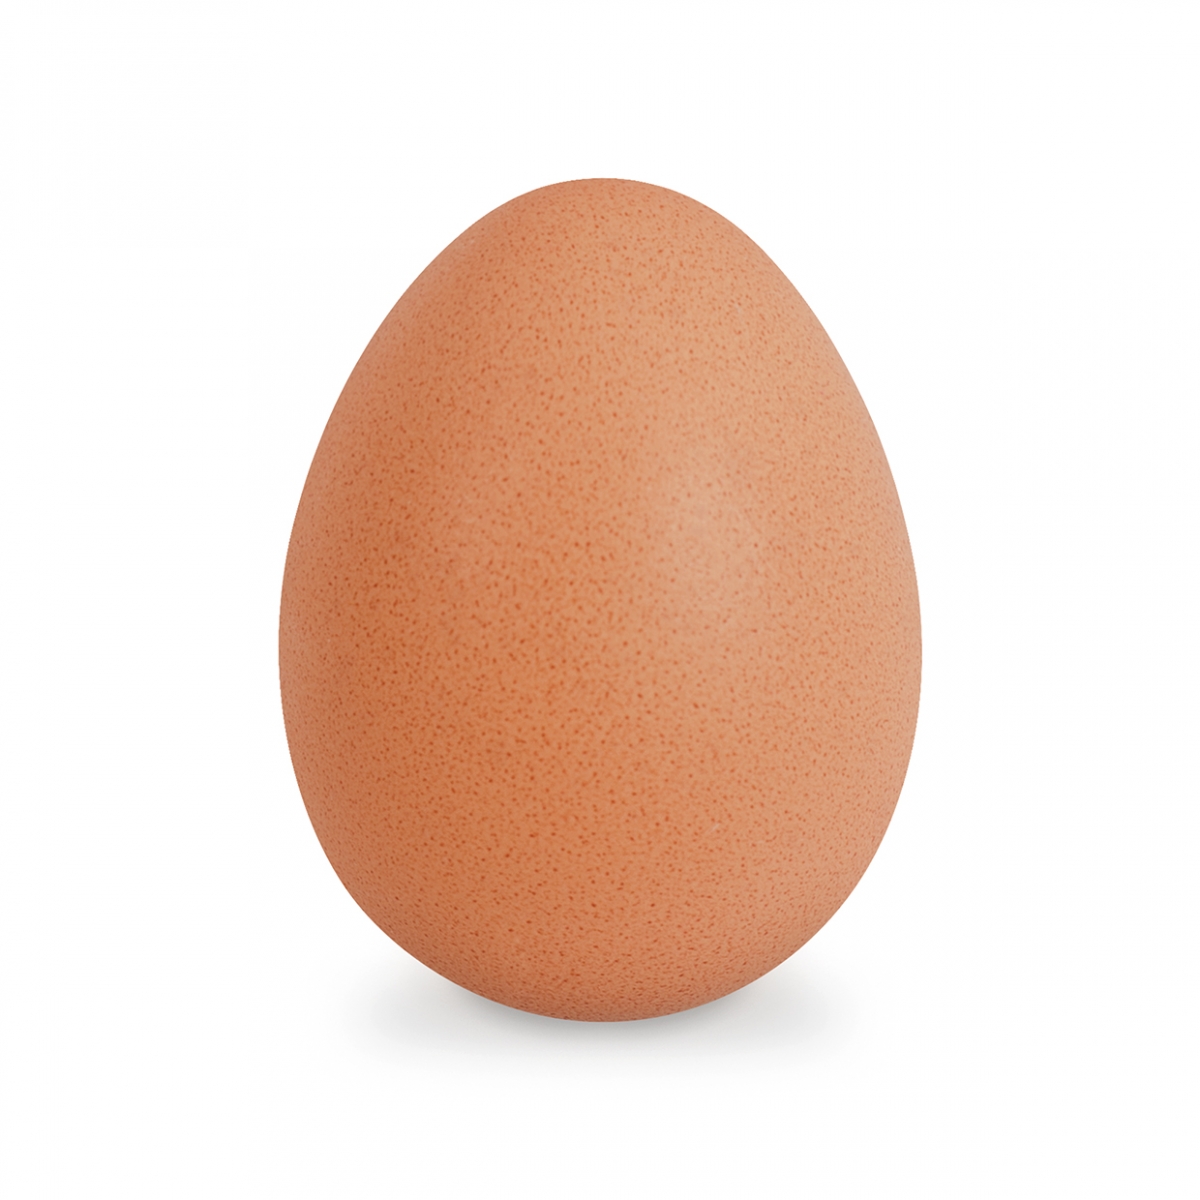 Imagen en la que se ve un huevo